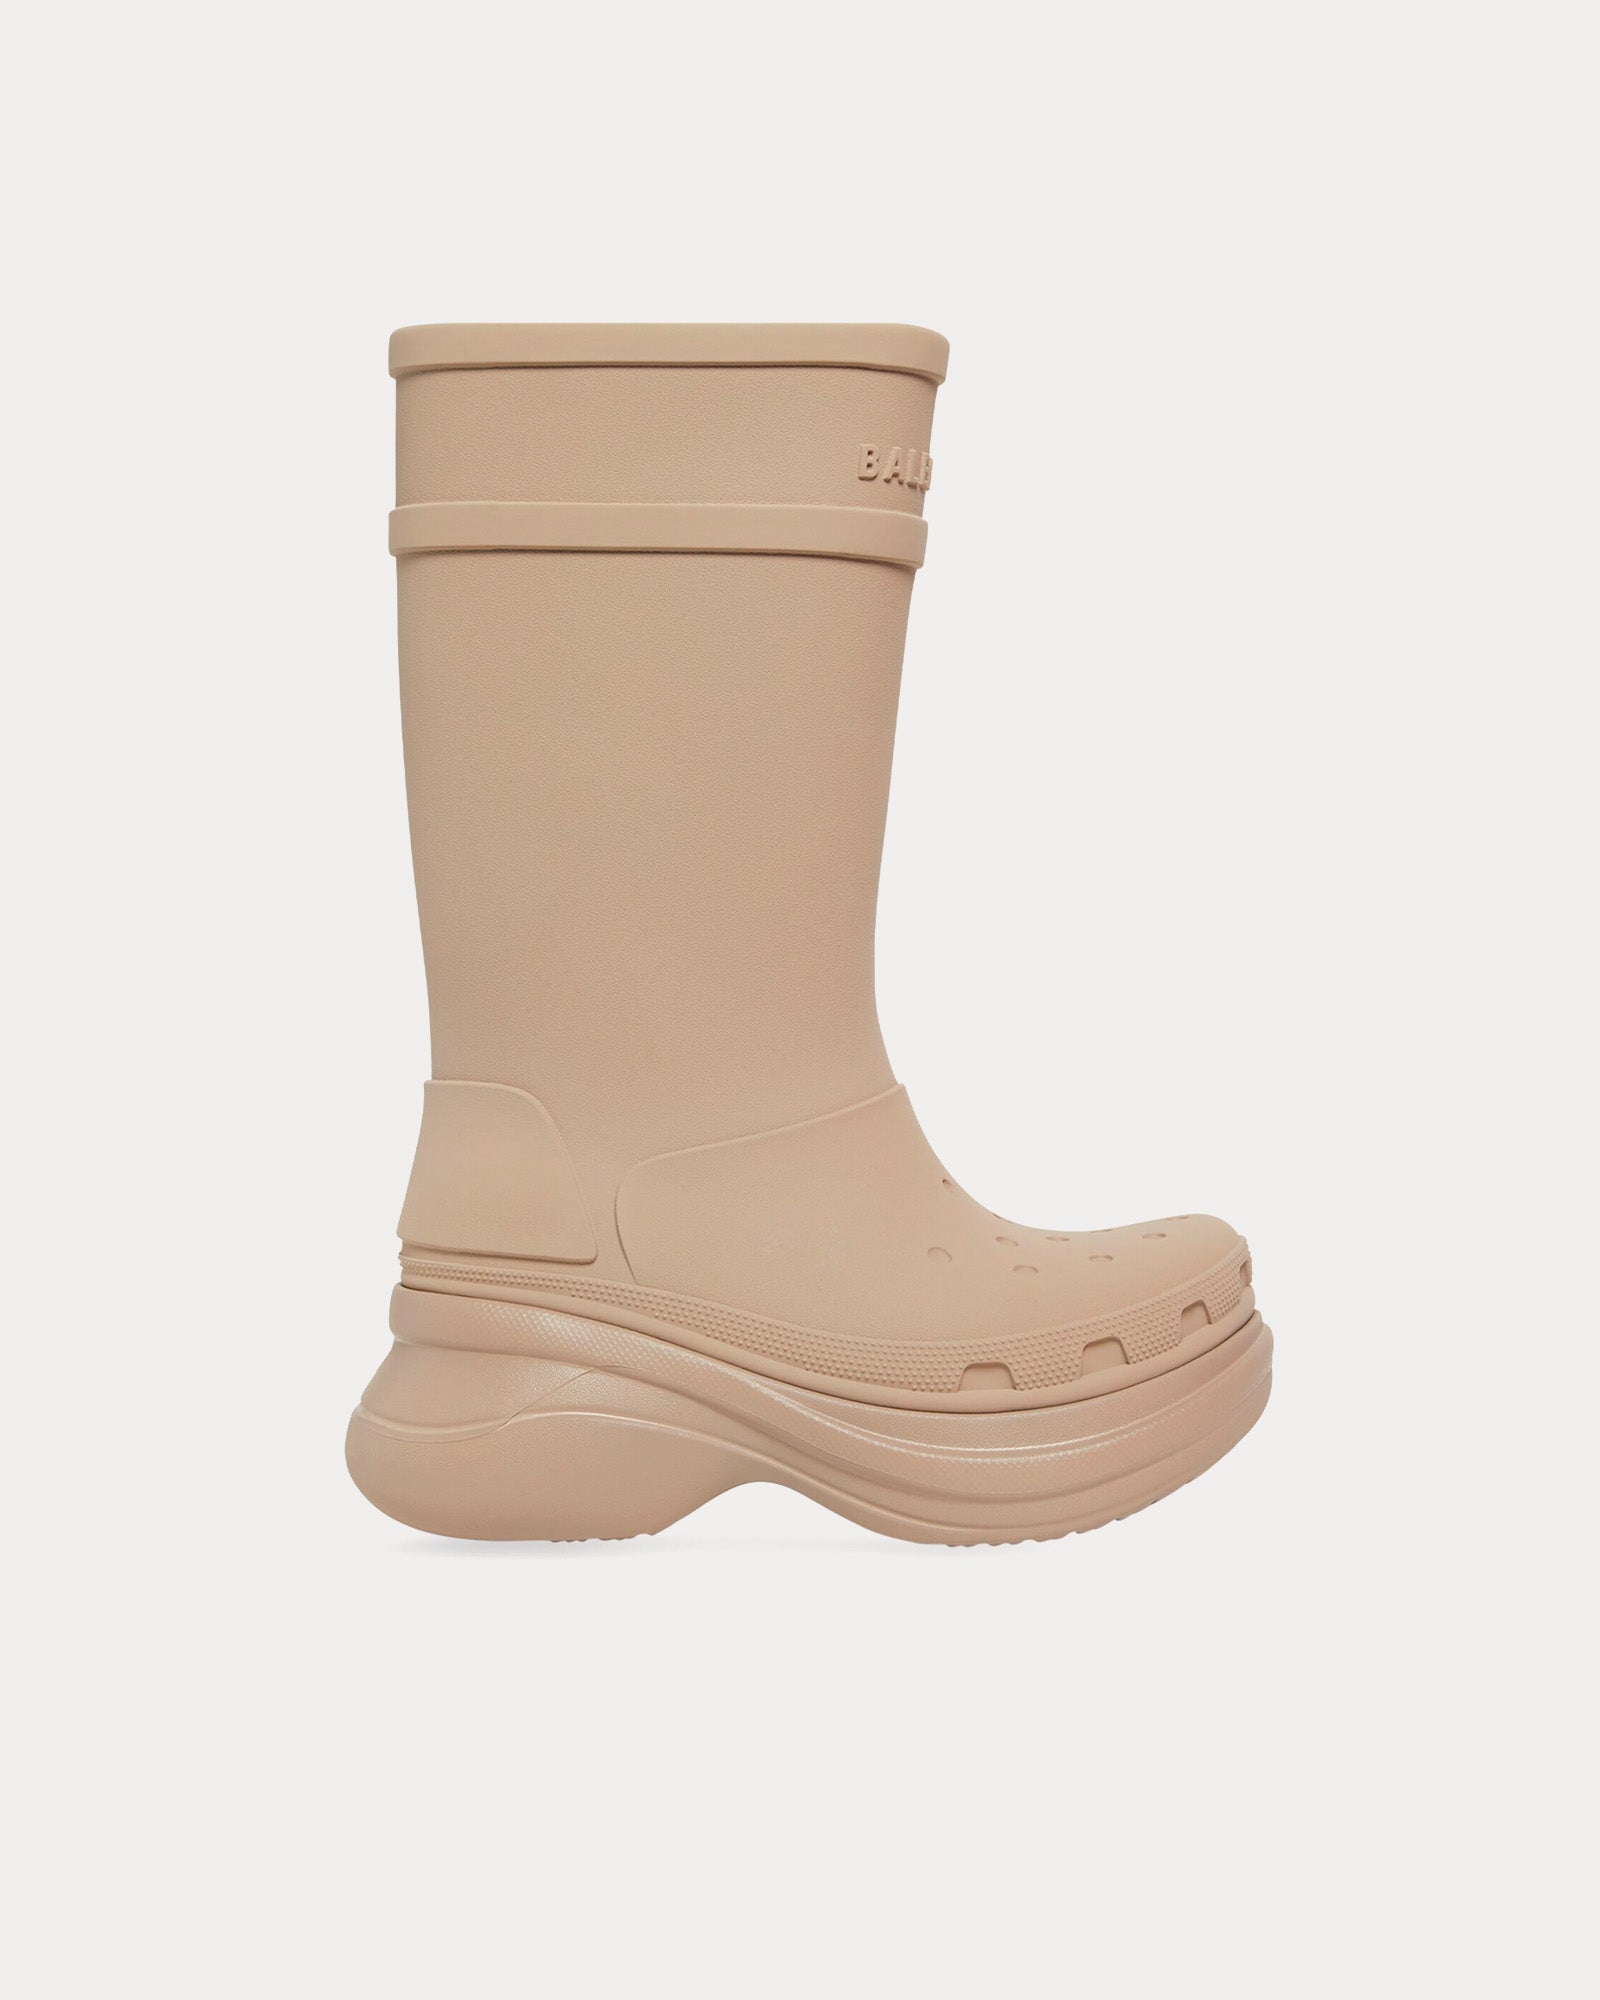 Balenciaga x Crocs - Rubber Beige Boots